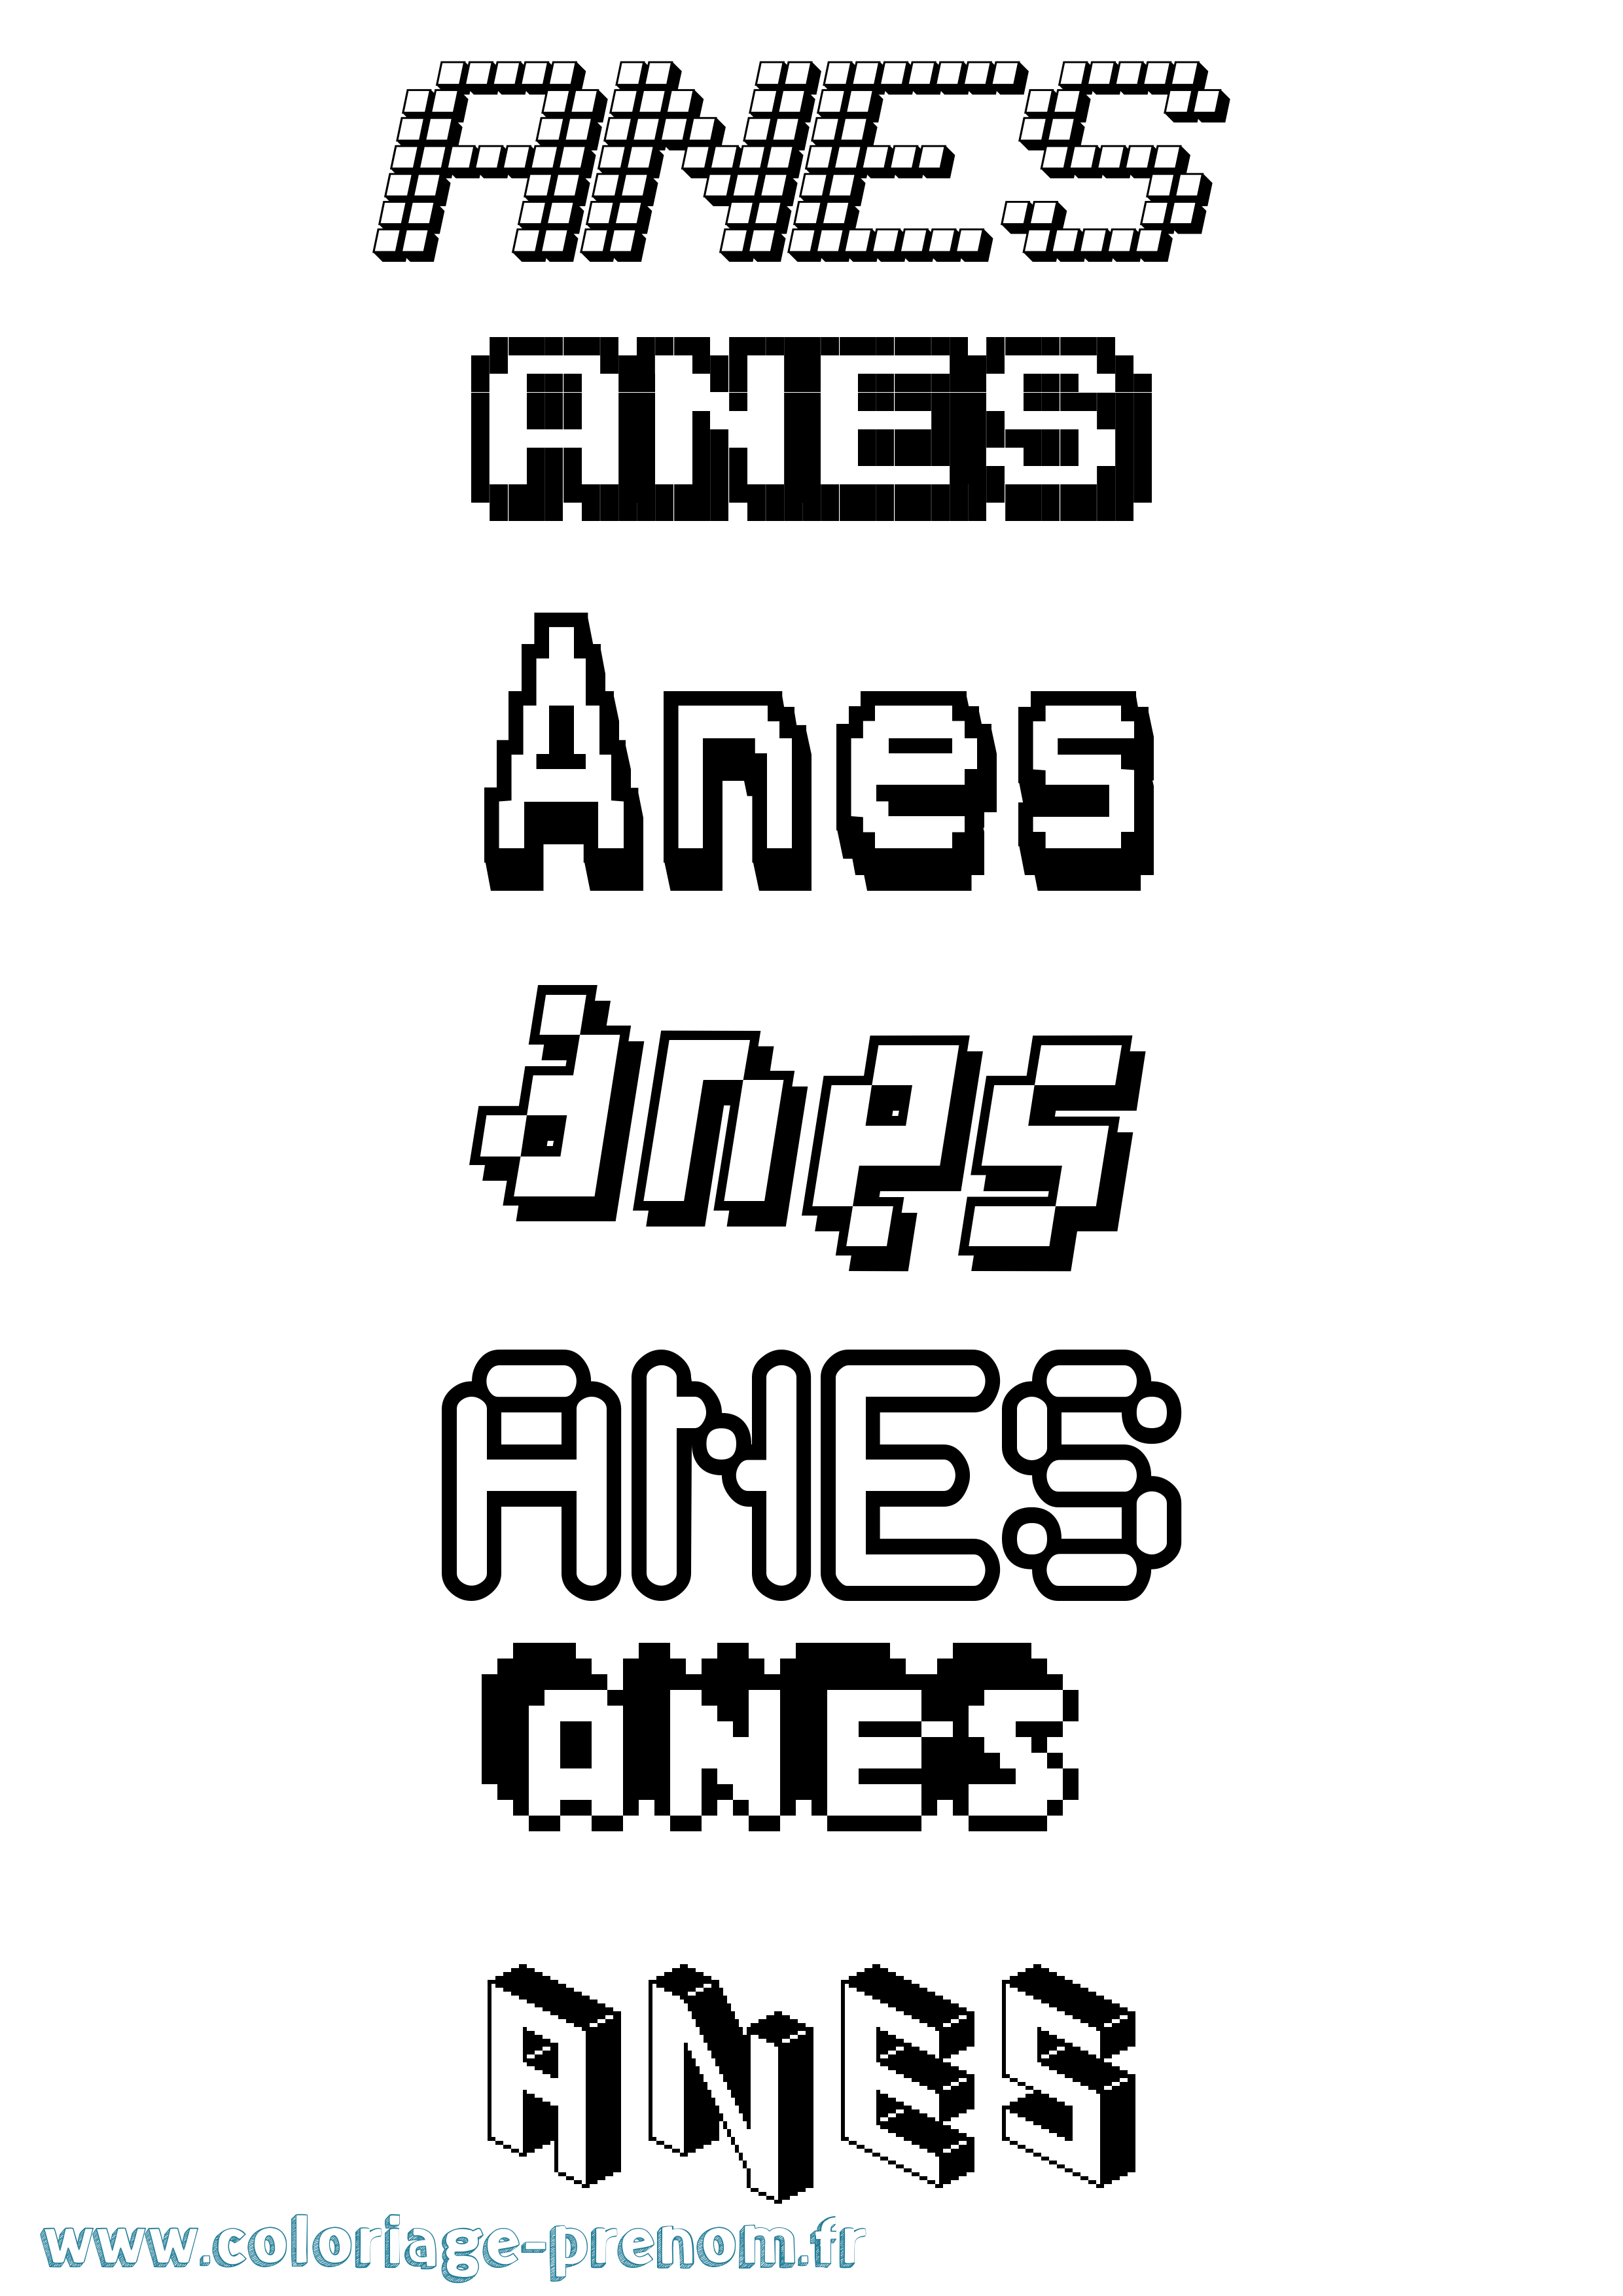 Coloriage prénom Anes Pixel